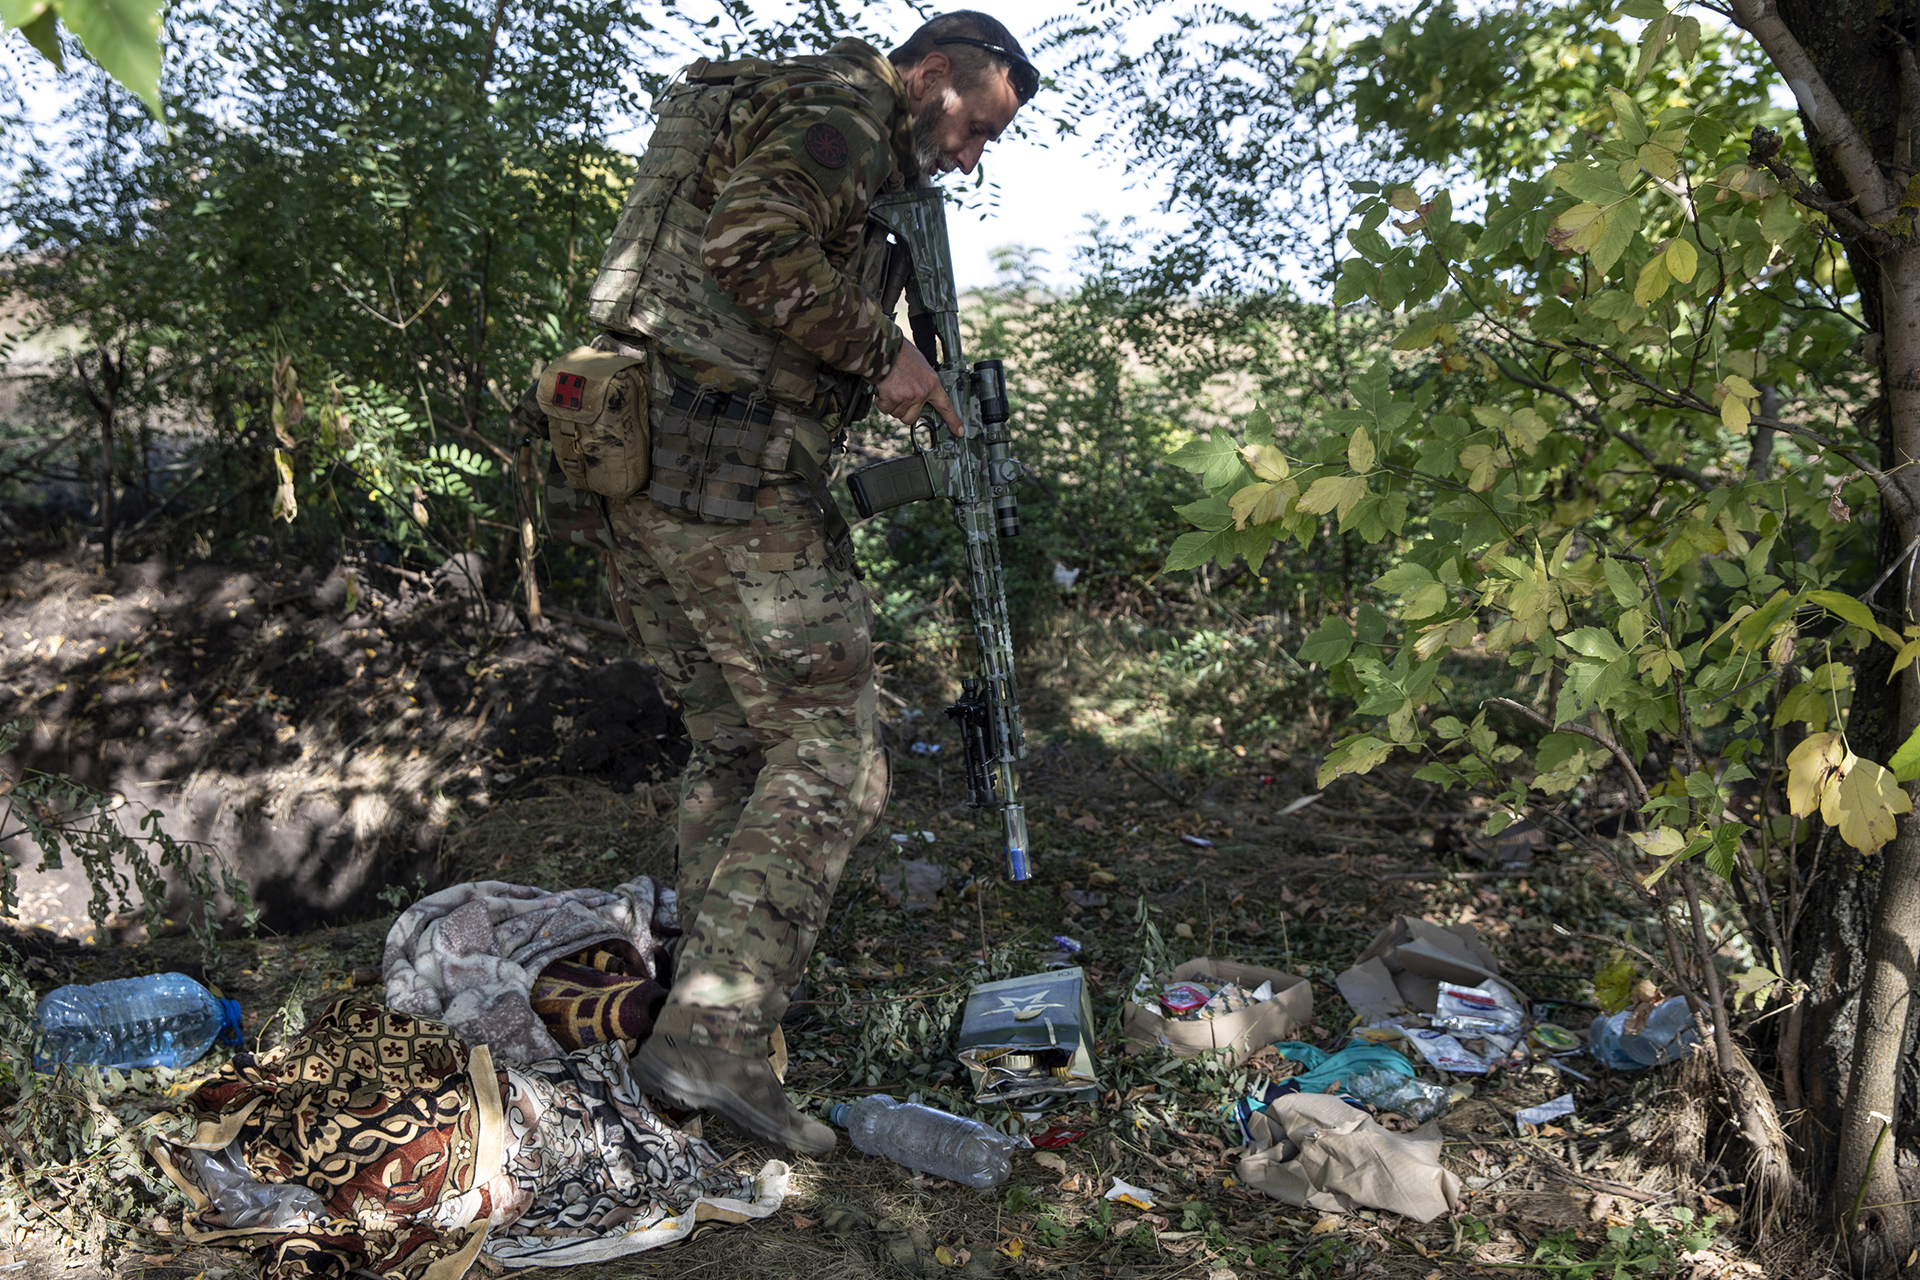 Denys, de 42 años, miembro de la unidad ucraniana Falcon de las Fuerzas de Defensa Territorial de Kryvyi Rih que se hace llamar "Khatib", explora una antigua posición de la línea de trinchera rusa llena de comida en la región de Kherson (Photo for The Washington Post by Heidi Levine)